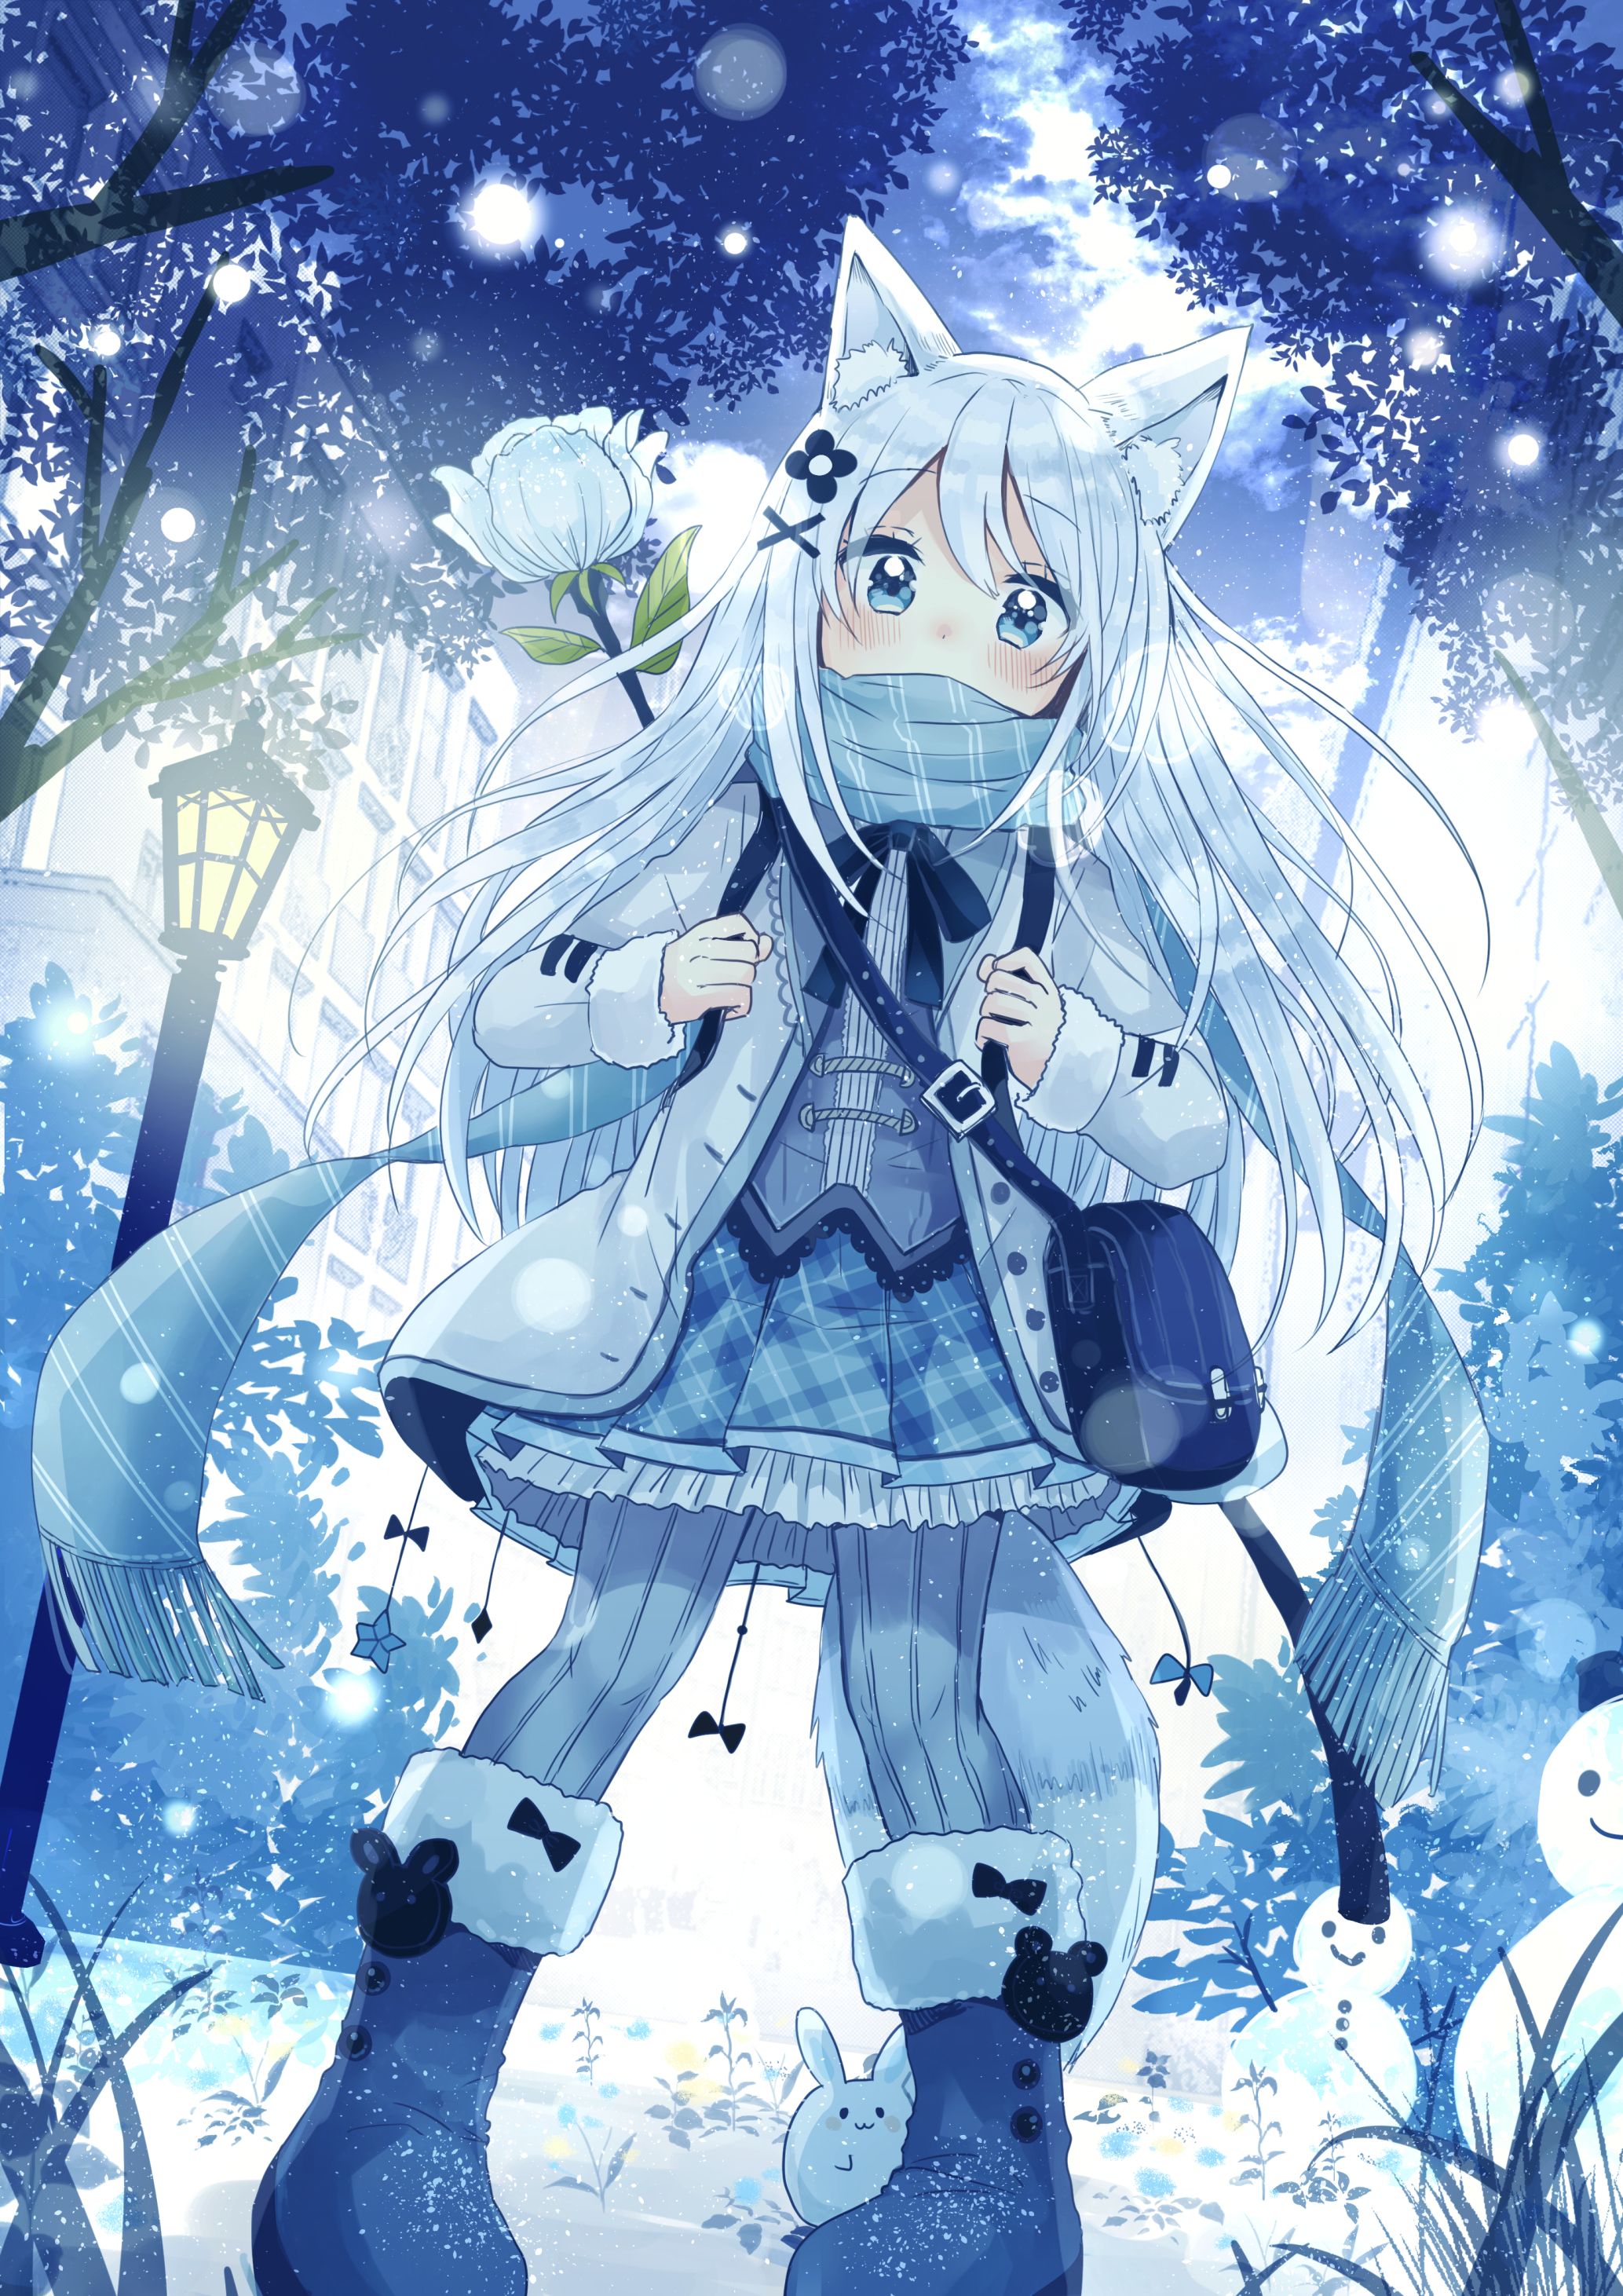 Hình ảnh Anime mùa đông dễ thương: Mùa đông đang đến gần, hãy bắt đầu thay đổi hình nền của bạn với Hình ảnh Anime mùa đông dễ thương và tạo ra một không gian ấm áp, tươi sáng với những hình ảnh dễ thương của nhân vật Anime.